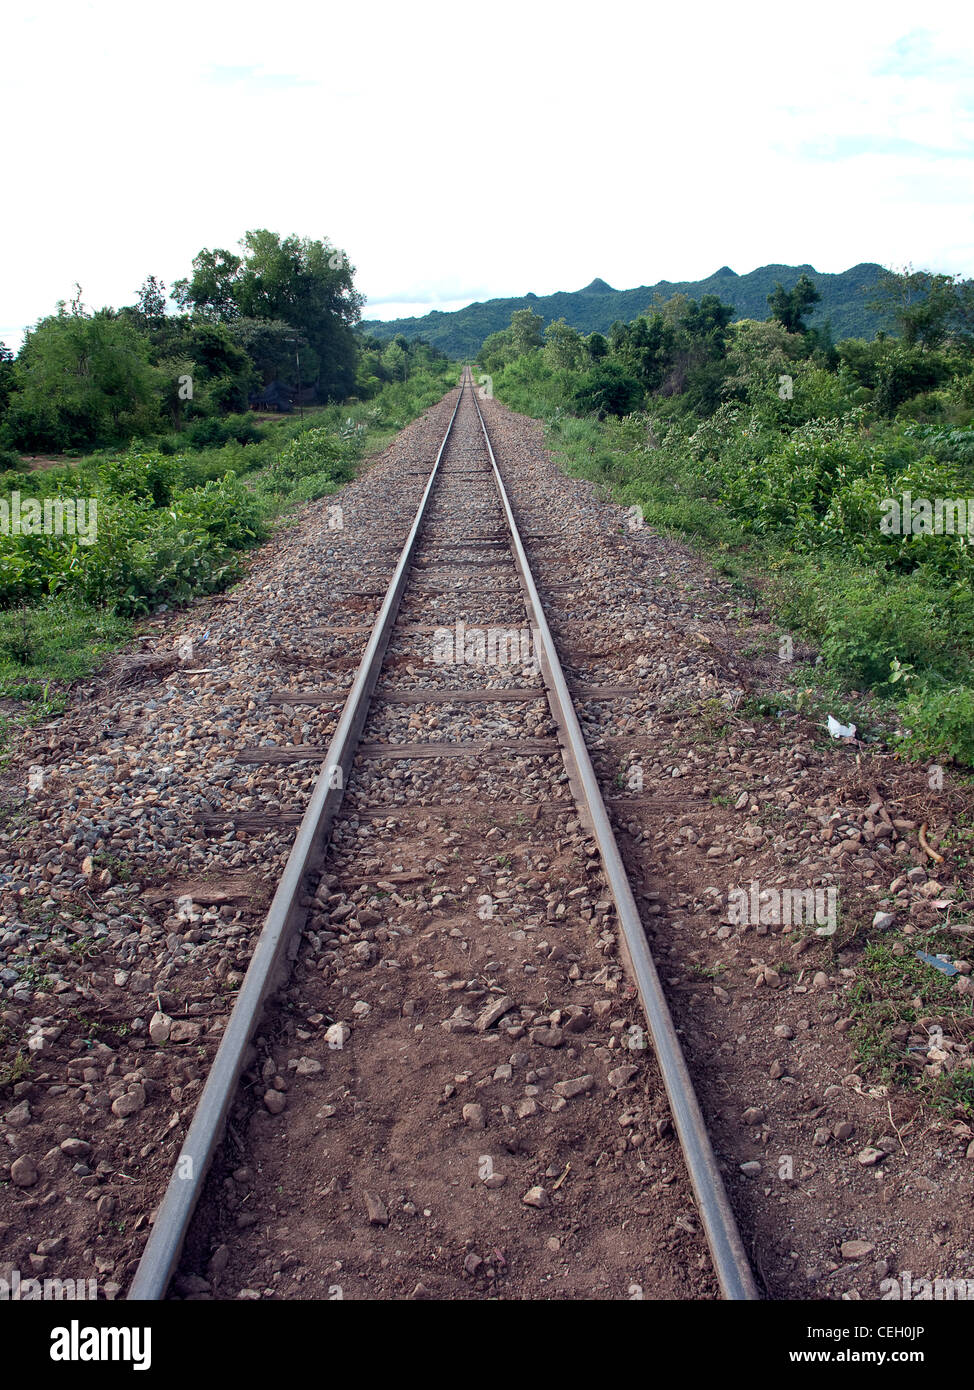 Birmanie thaïlandaise 'Death Railway'. Construit par le travail forcé et prisonniers de guerre alliés dans des conditions déplorables. 1942-1943. Kanchanaburi. Thaïlande Banque D'Images